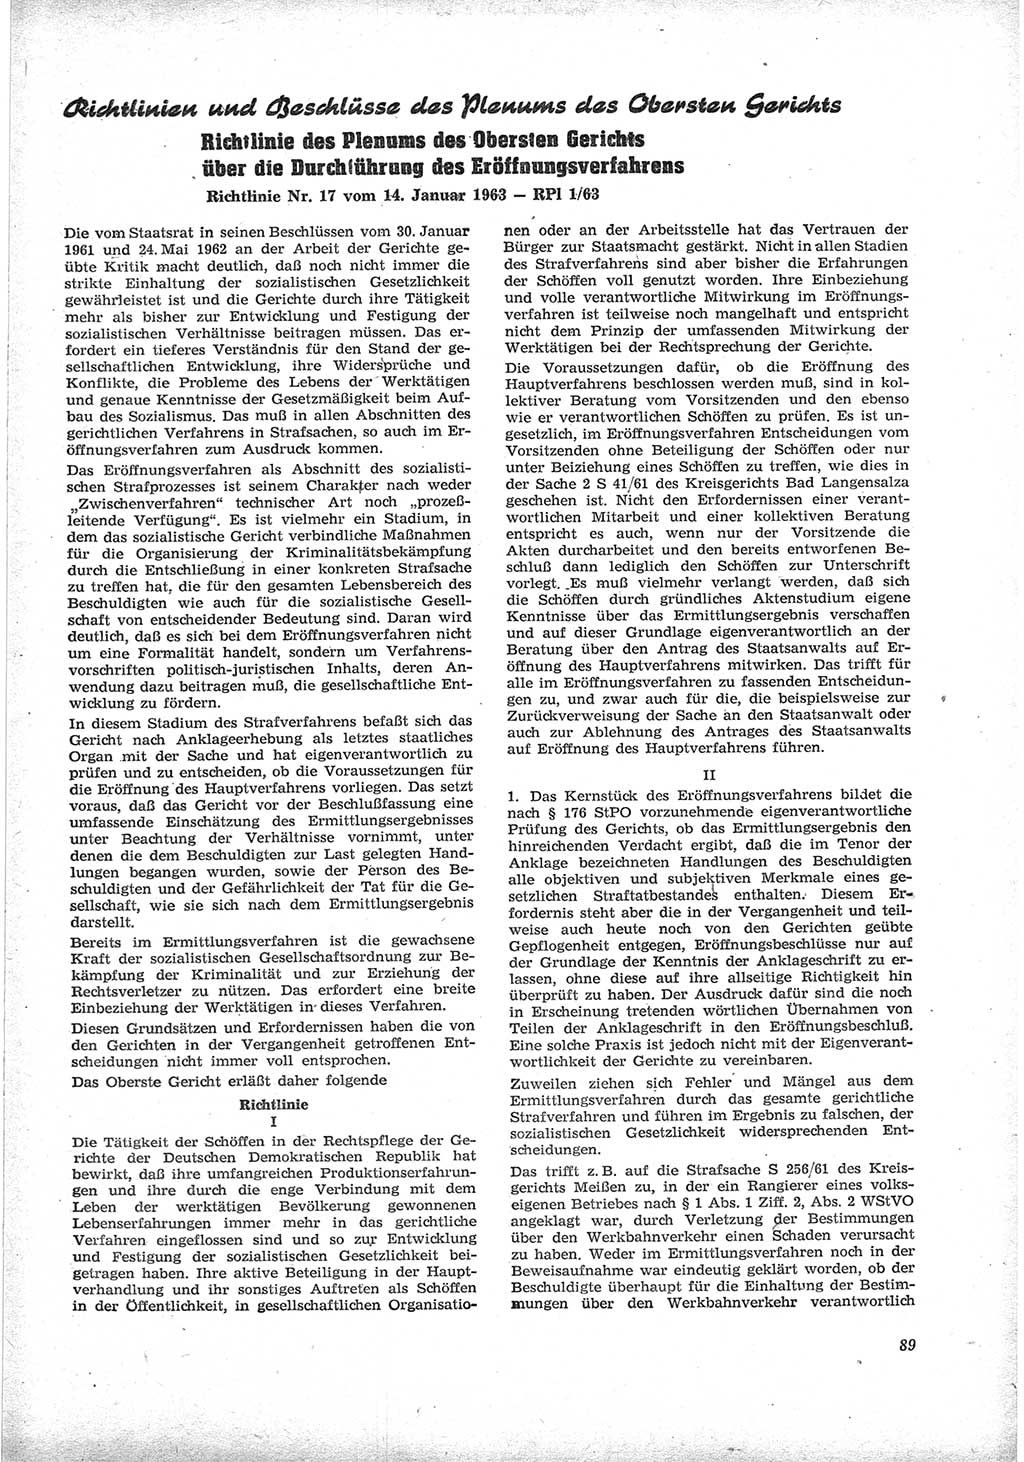 Neue Justiz (NJ), Zeitschrift für Recht und Rechtswissenschaft [Deutsche Demokratische Republik (DDR)], 17. Jahrgang 1963, Seite 89 (NJ DDR 1963, S. 89)